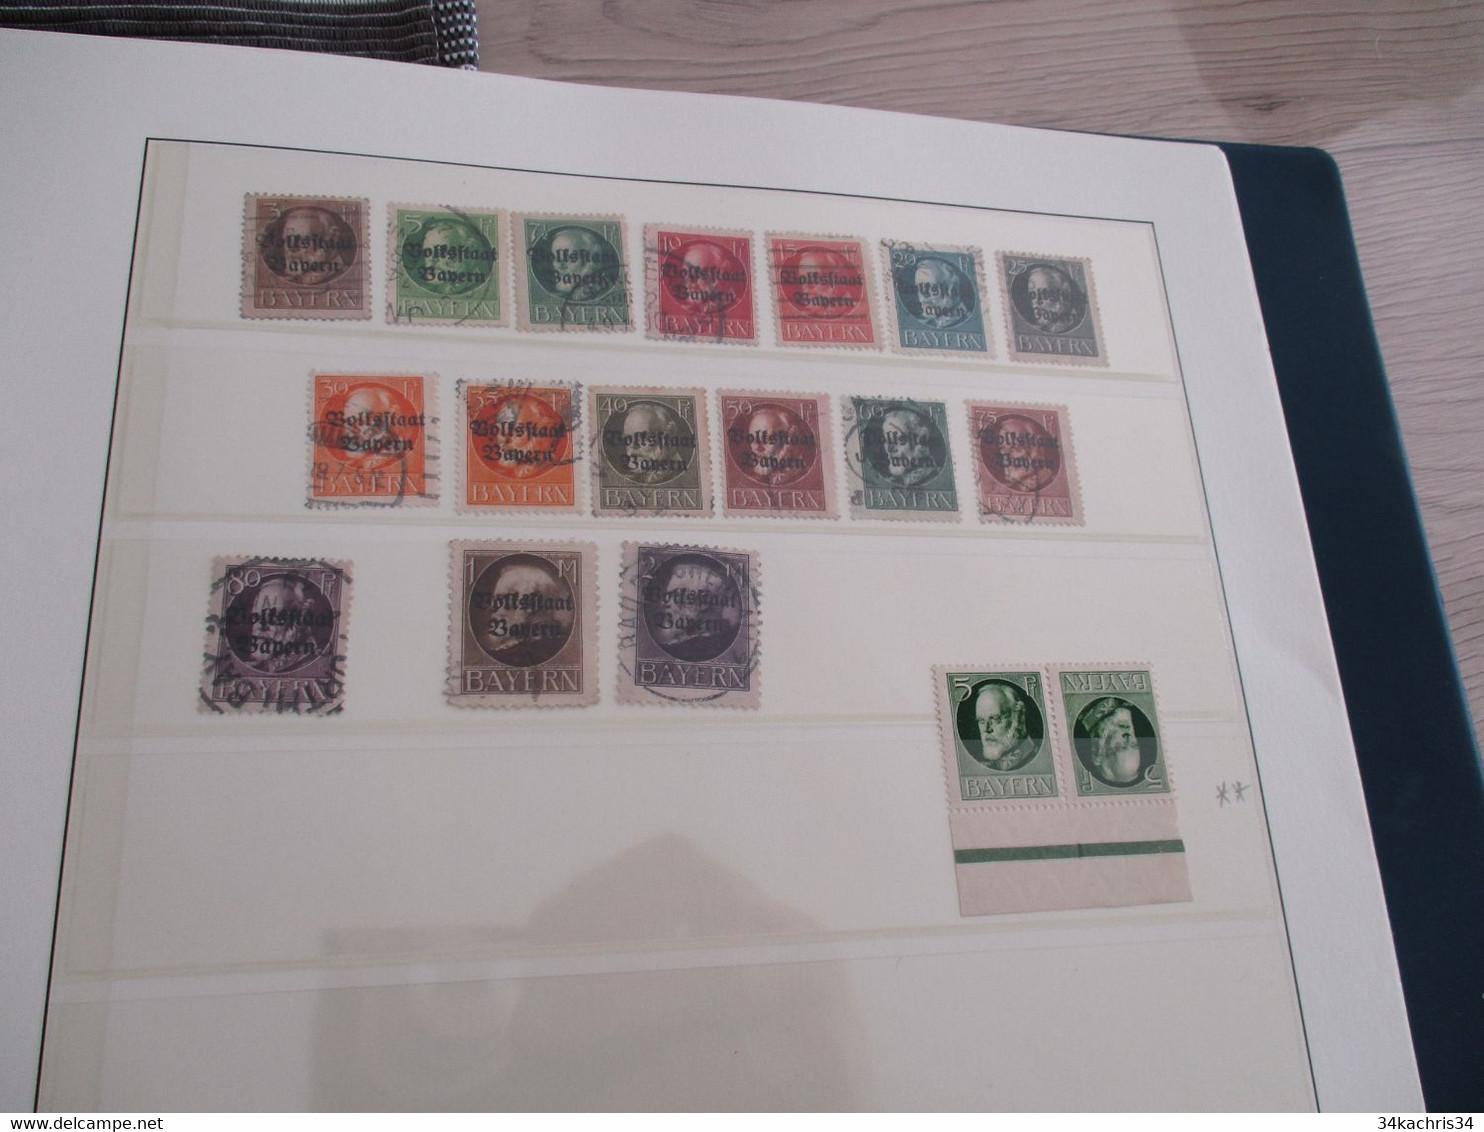 Allemagne Deutsche Post Bayer collection spécialisée forte côte tout état Liner notes au crayon non vérifiées